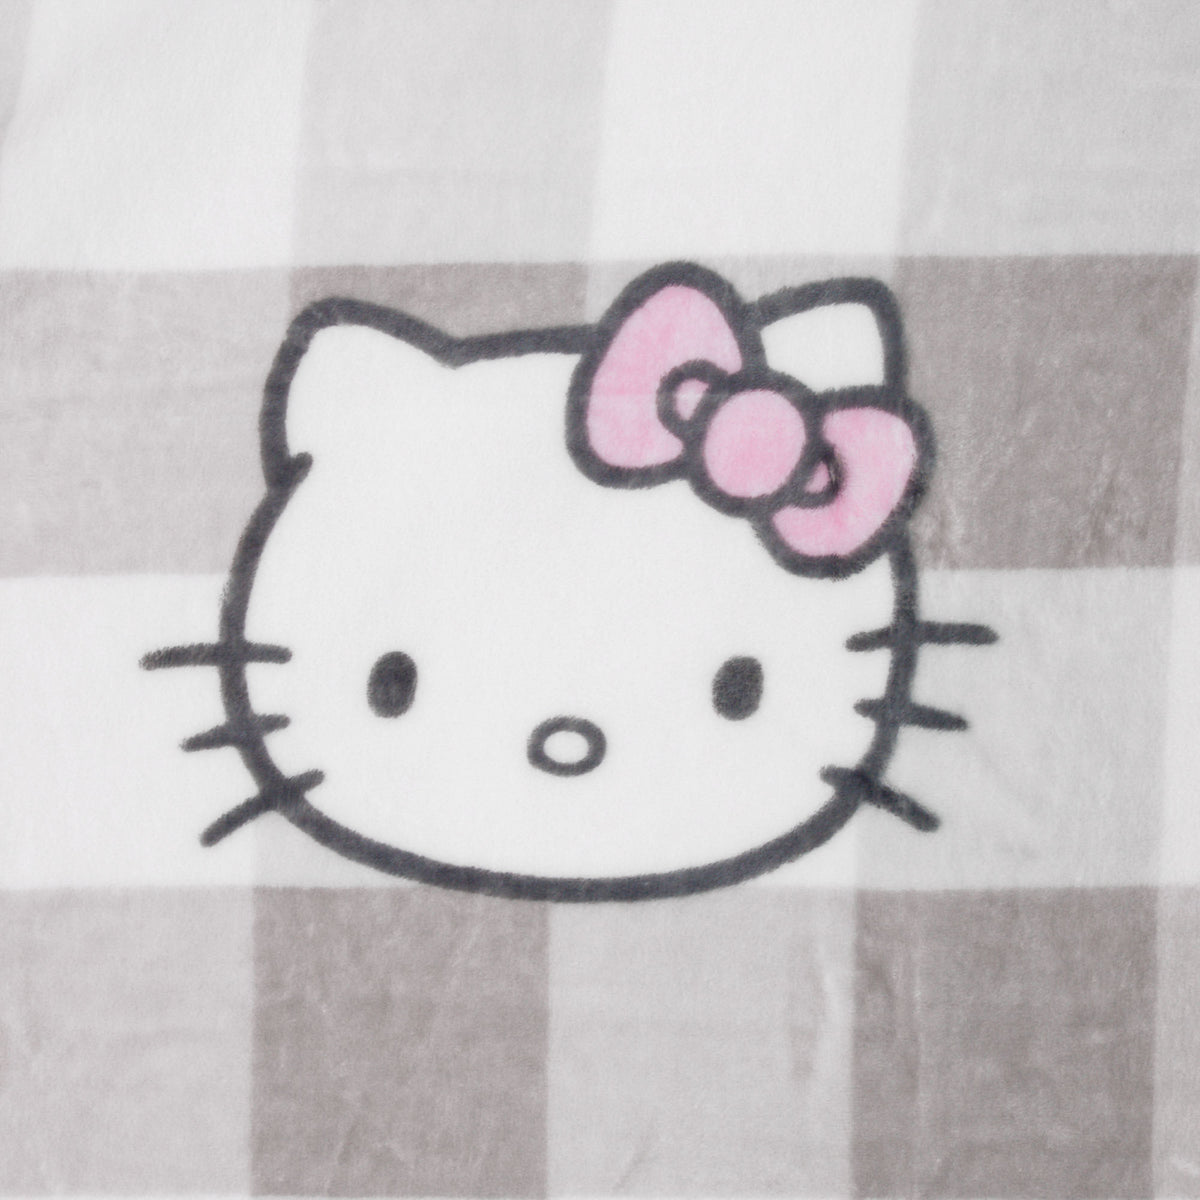 Hello Kitty Throw Blanket (Plaid Print Series)